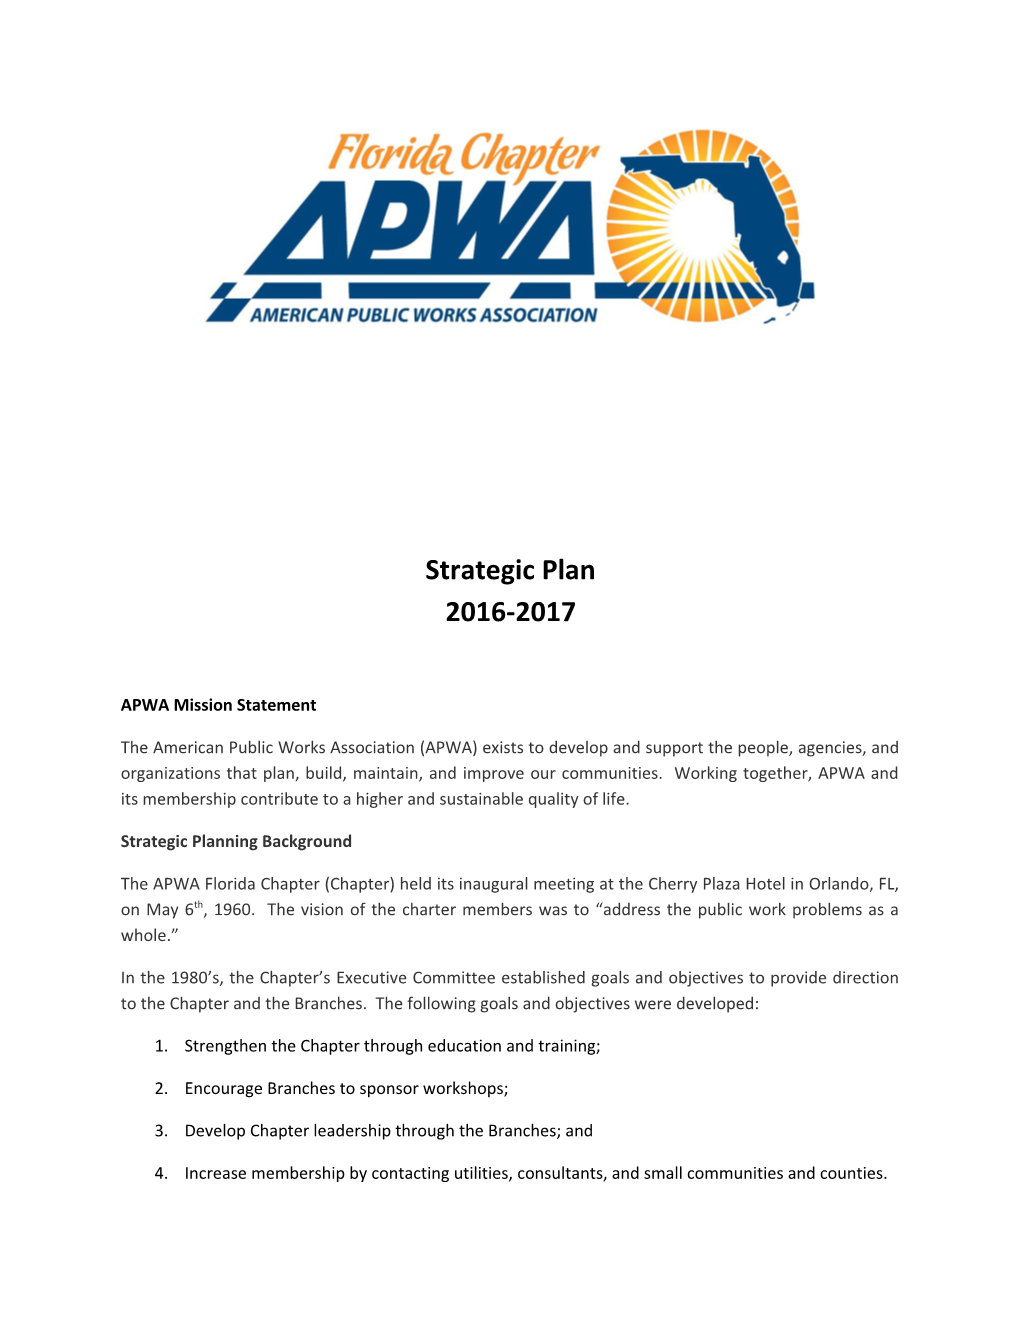 APWA Mission Statement